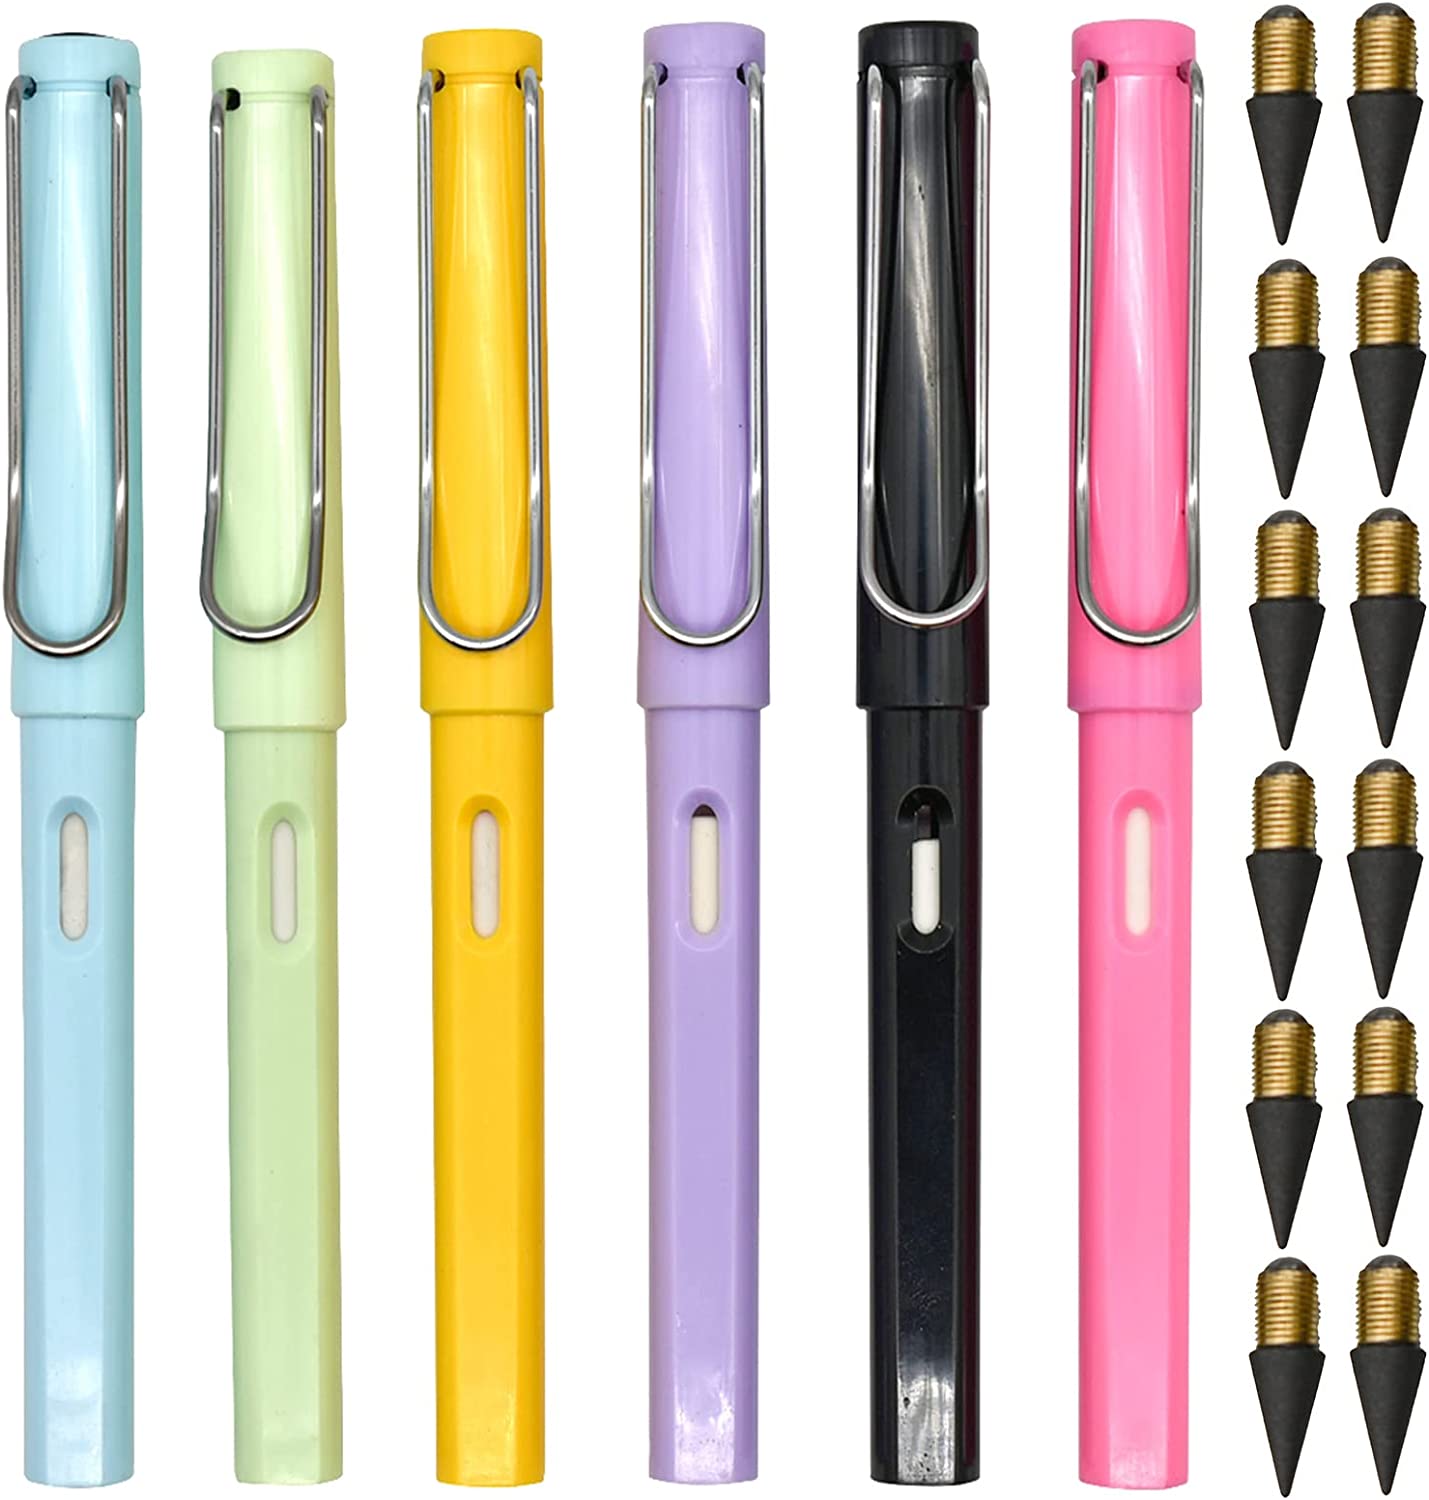 Plastic Pen Body Inkless Eternal Pen with eraser